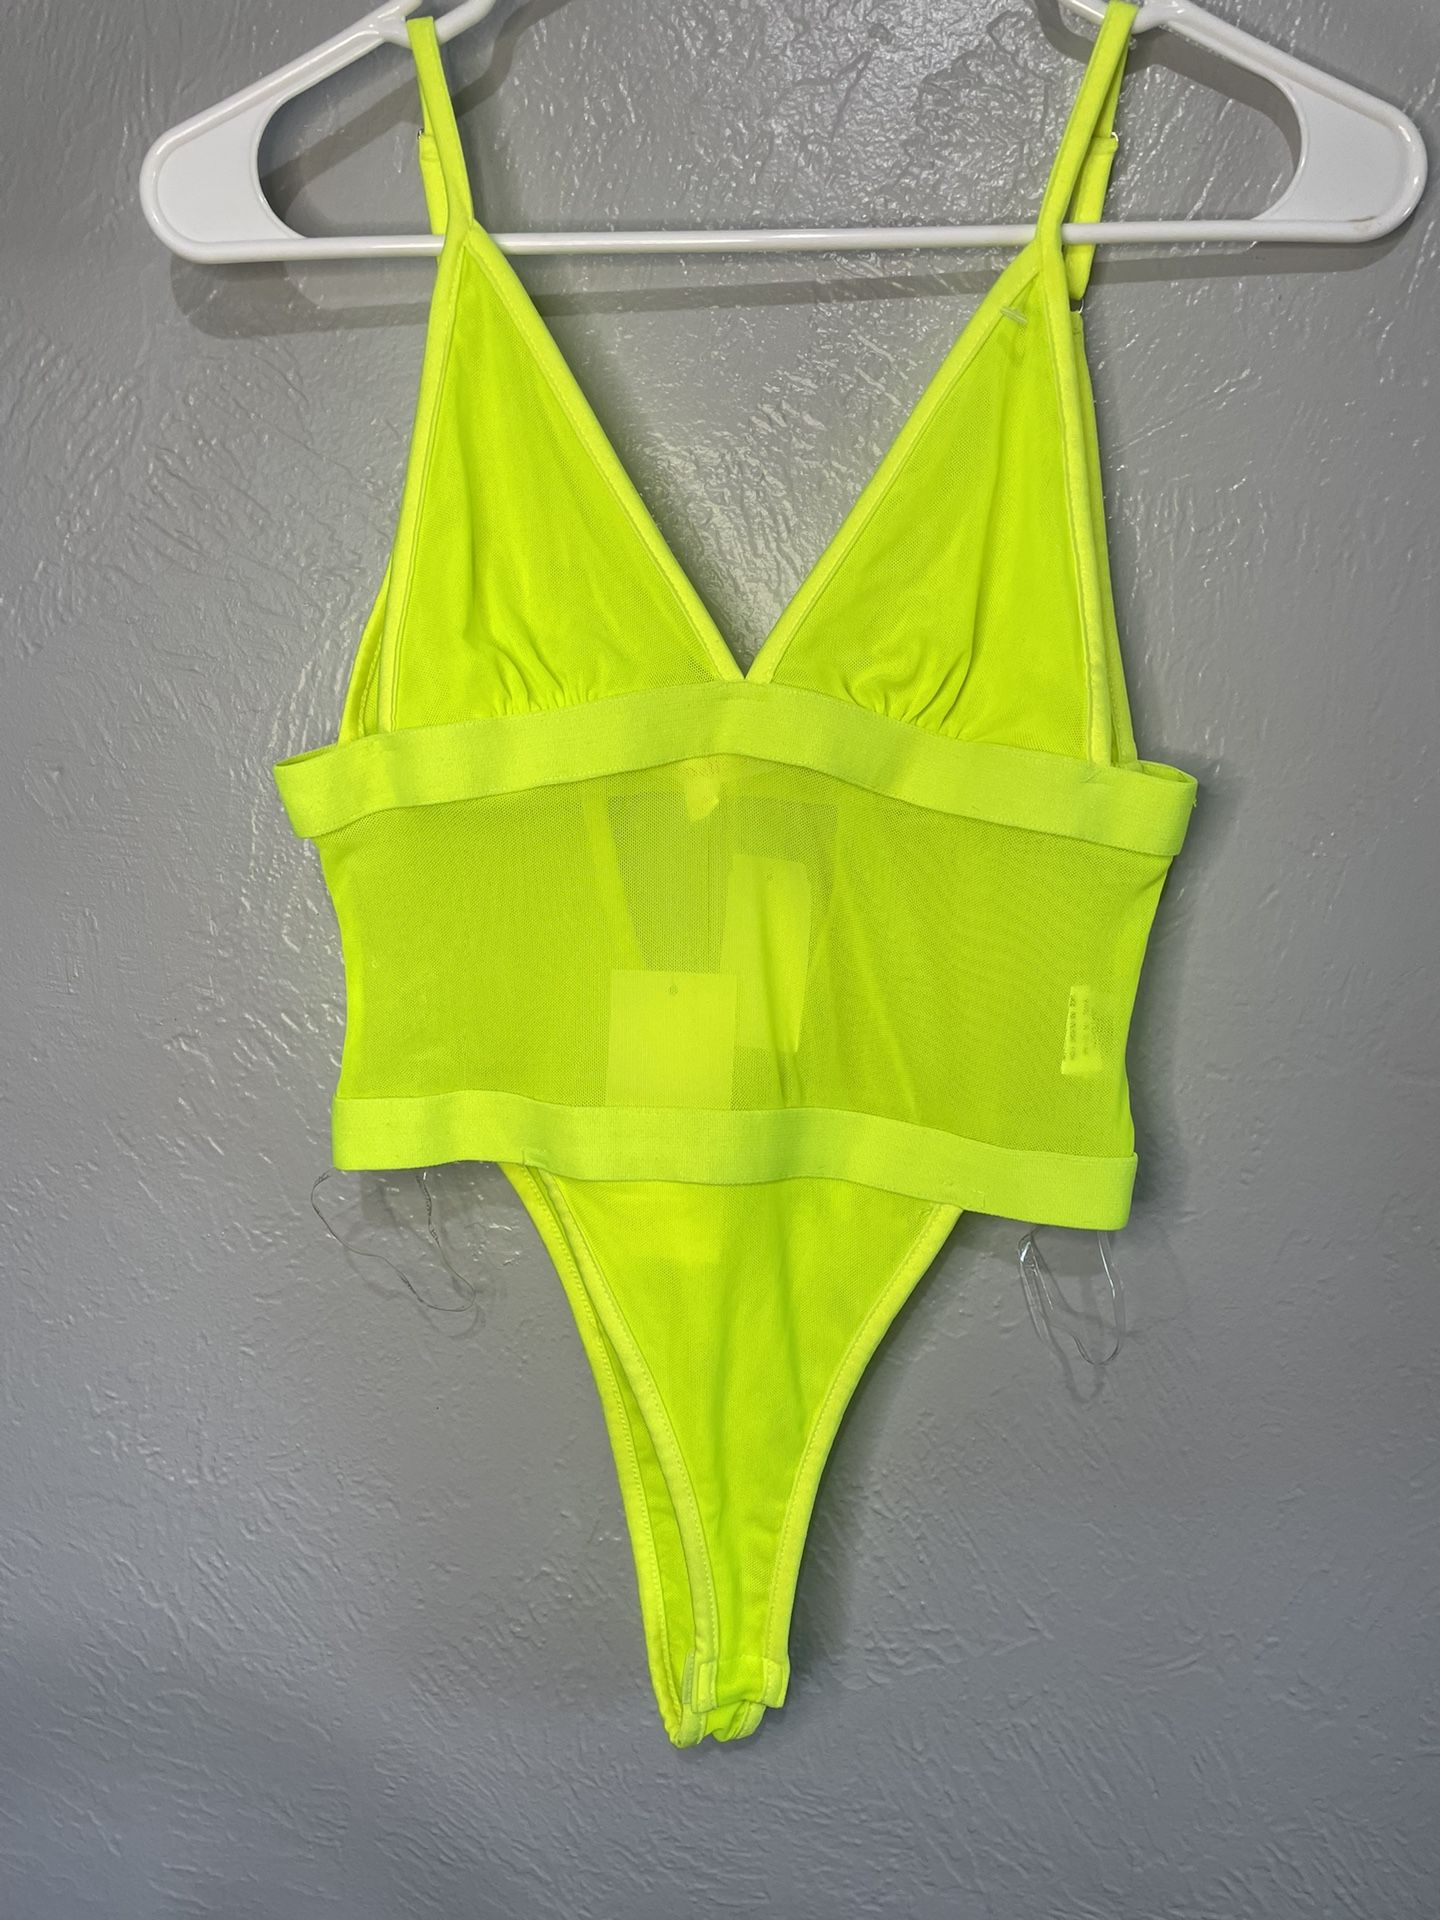 New Neon Yellow Mesh Bodysuit (S)